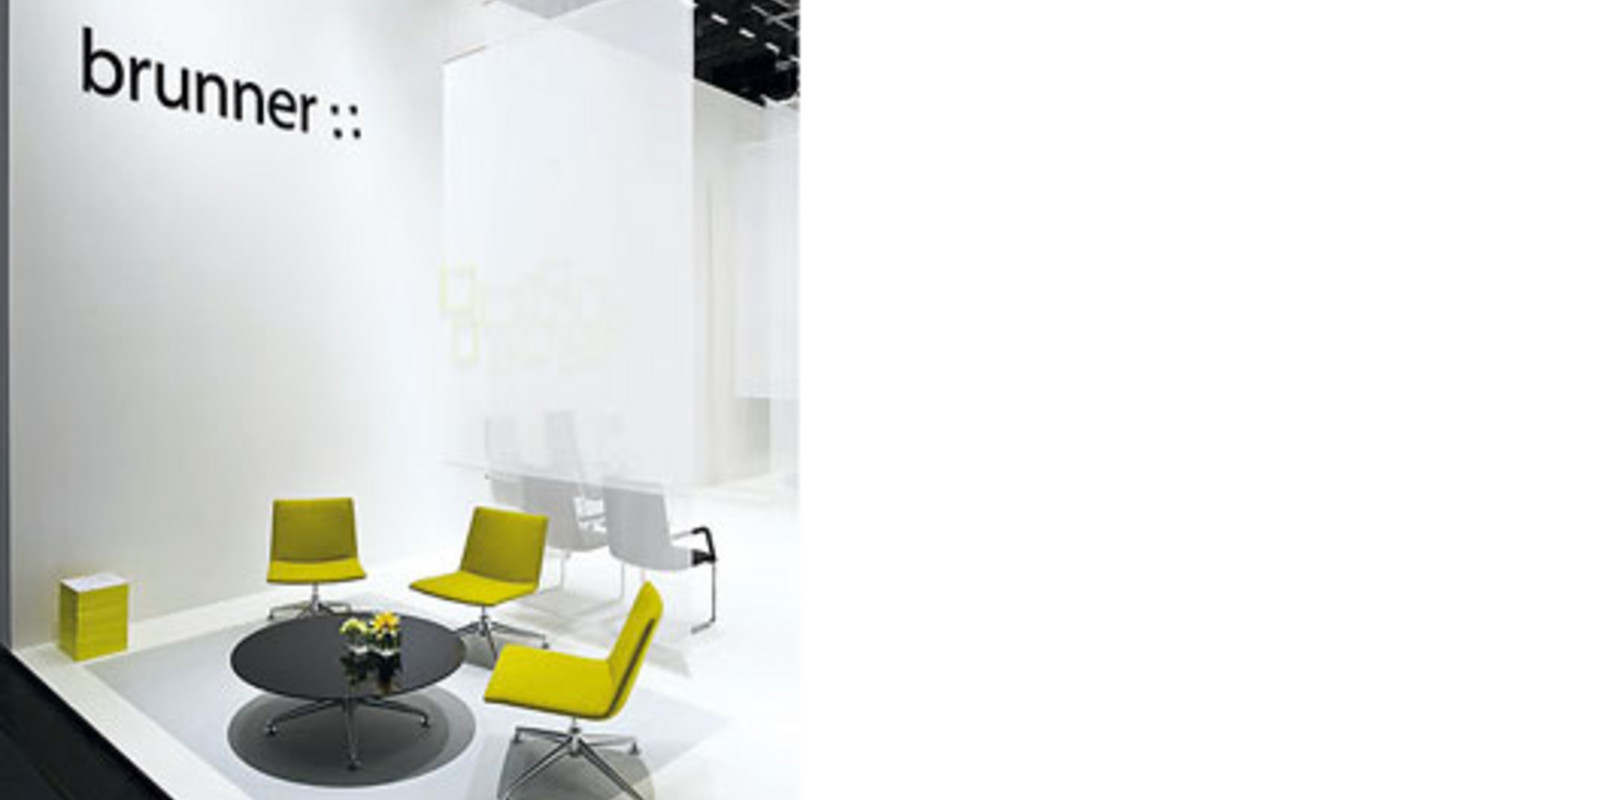 Brunner - Stühle aus hochwertigem Kunststoff, farbenfroh und pflegeleicht Bild 4